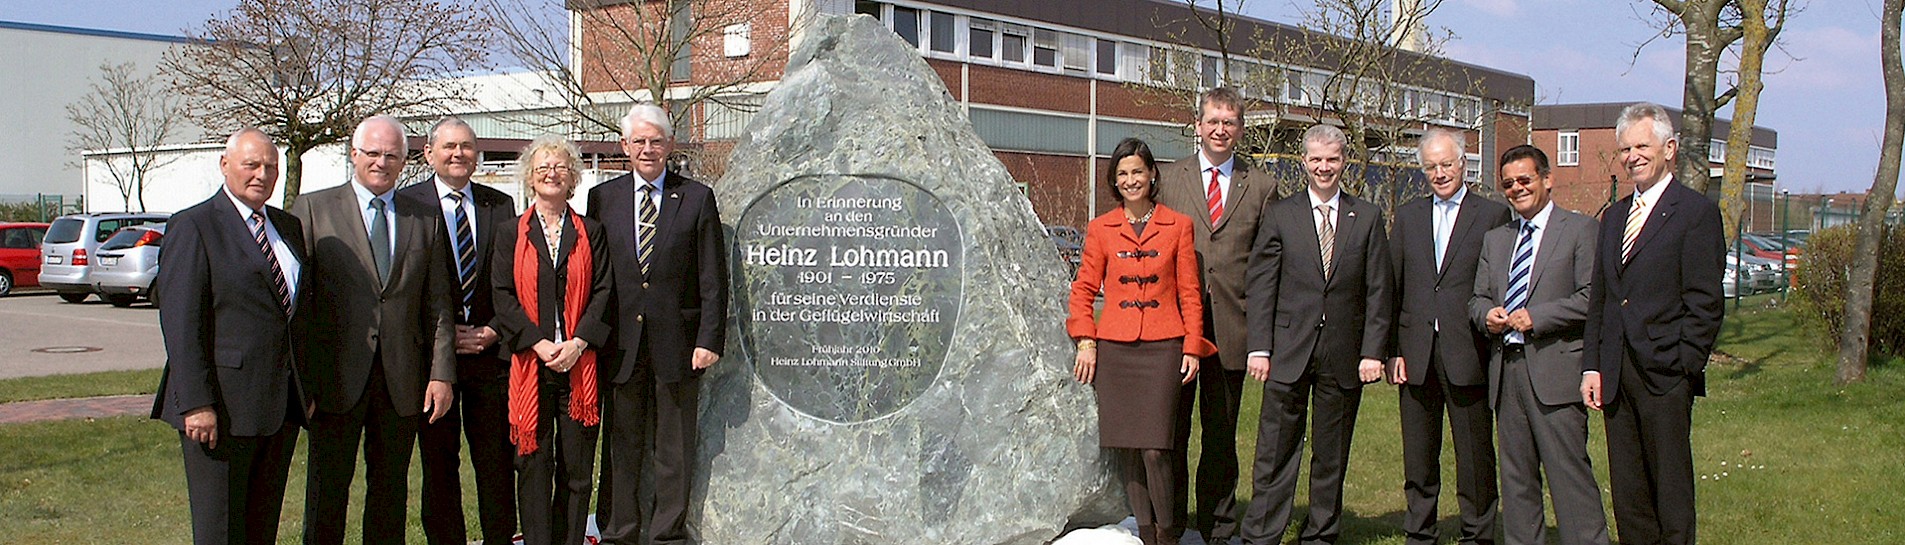 Heinz Lohmann Stiftung